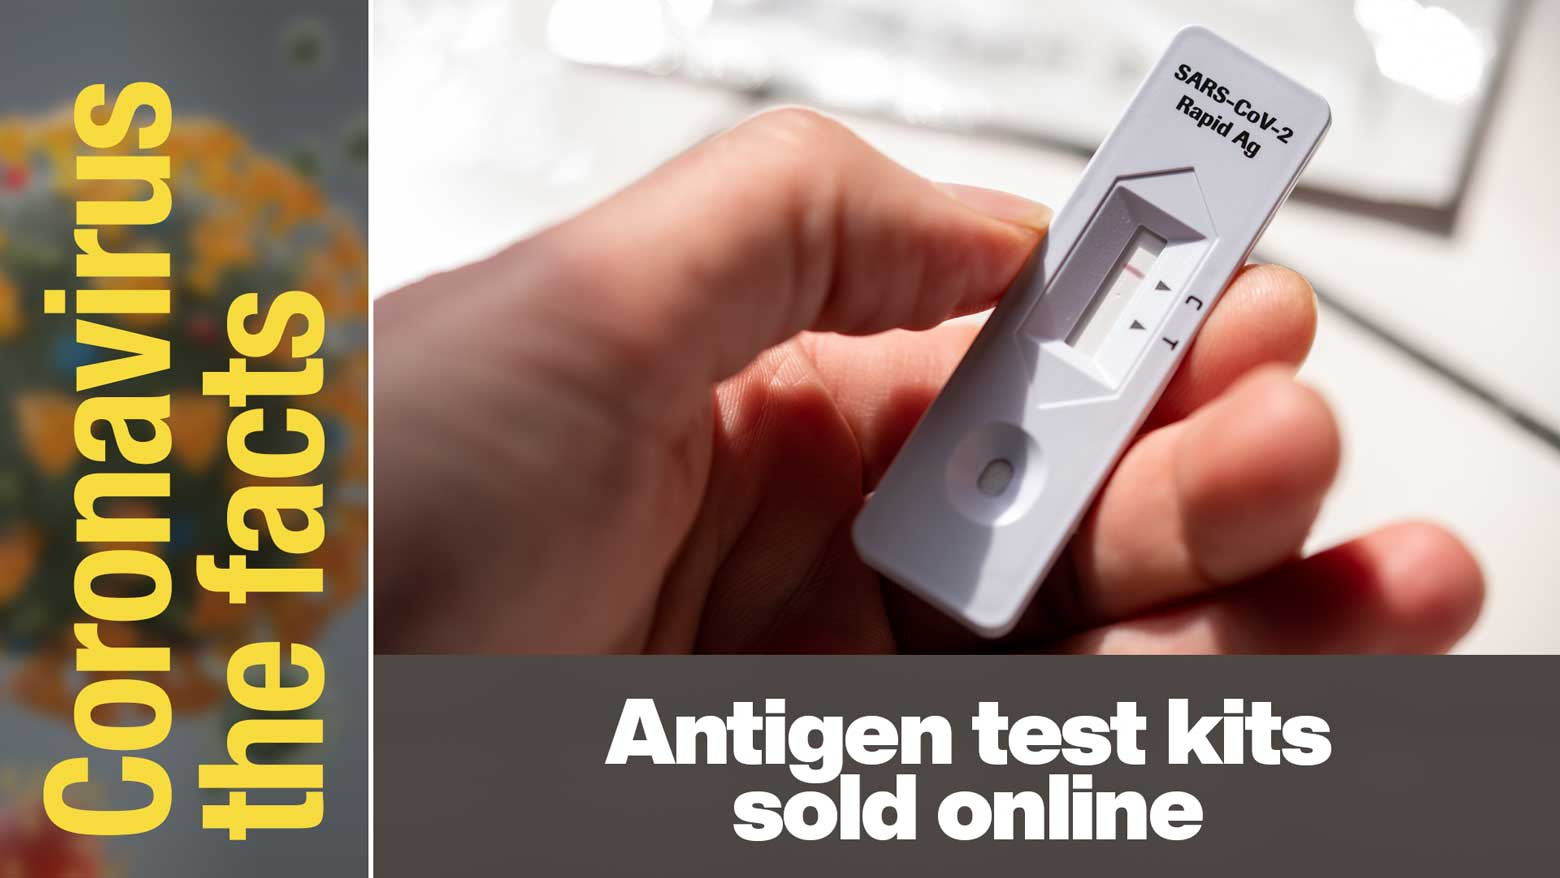 Japan starts online sales of govt. certified antigen self-test kits